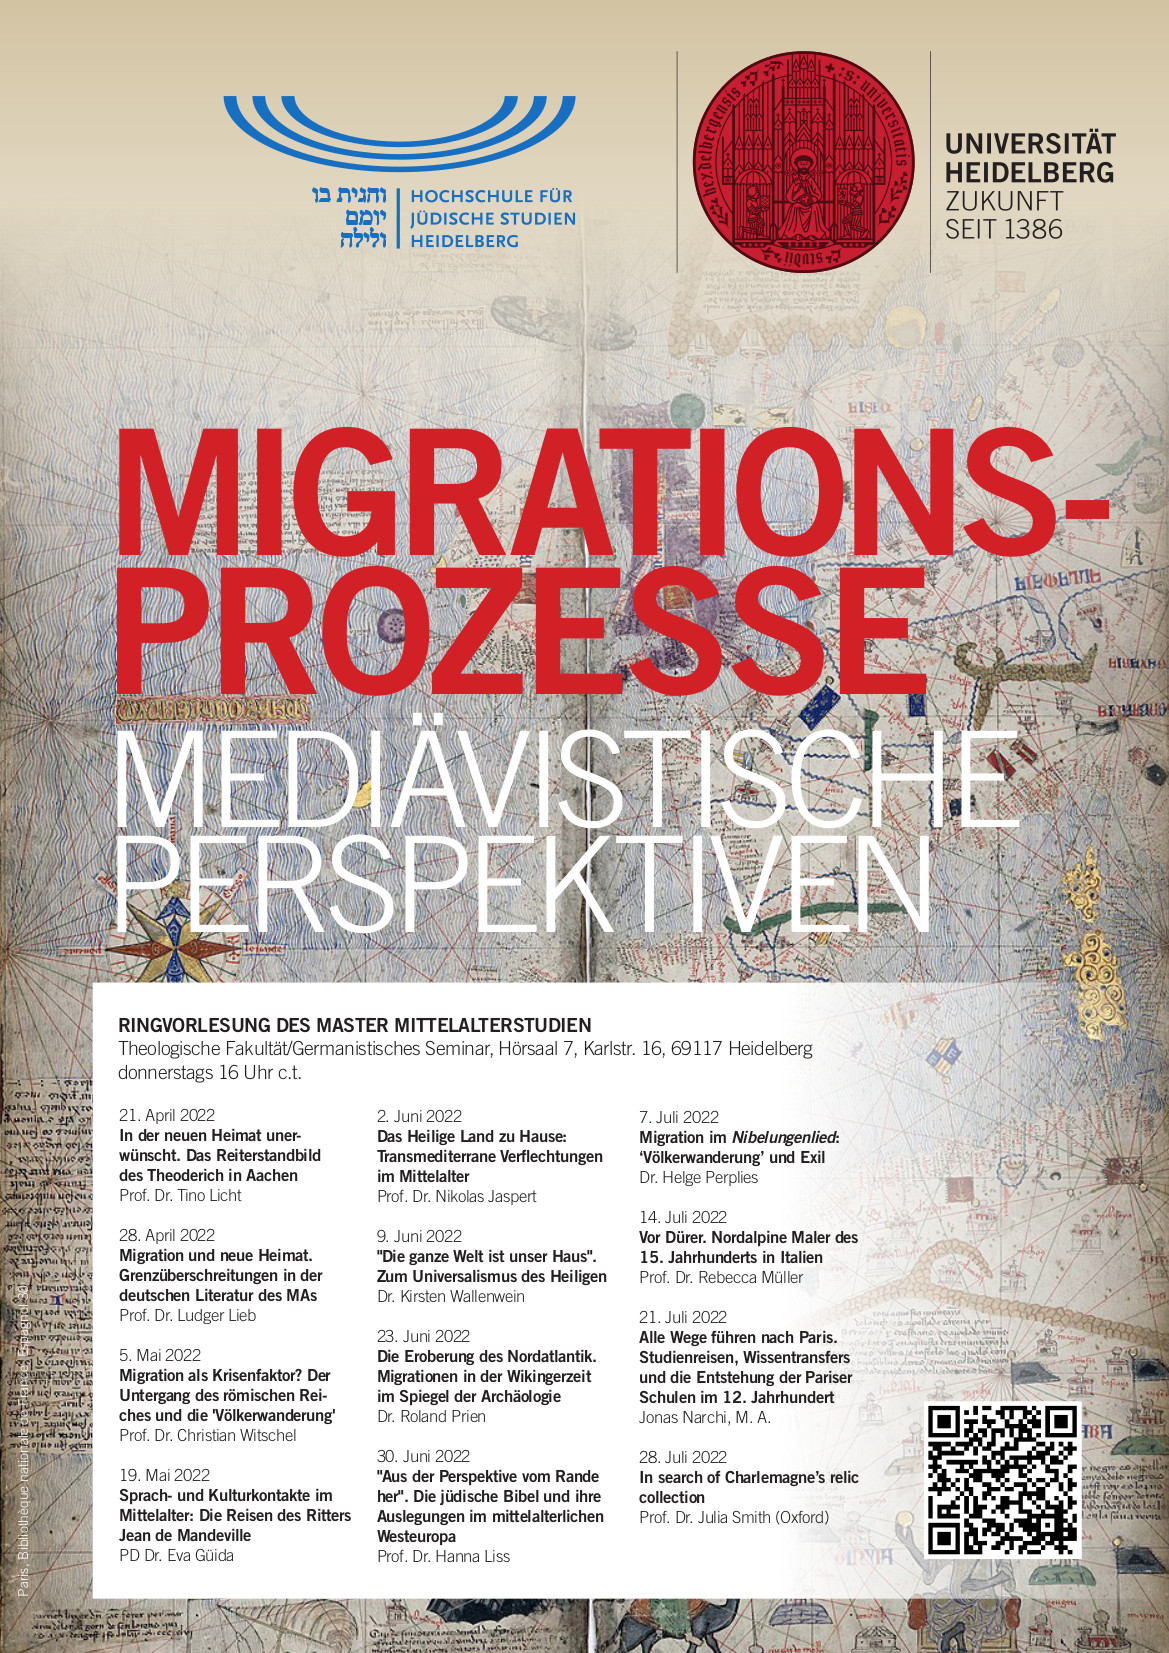 Ringvorlesung des HMM: Migrationsprozesse – mediävistische Perspektiven - donnerstags 16:00 Uhr in Hörsaal 7 in Karlstraße 16